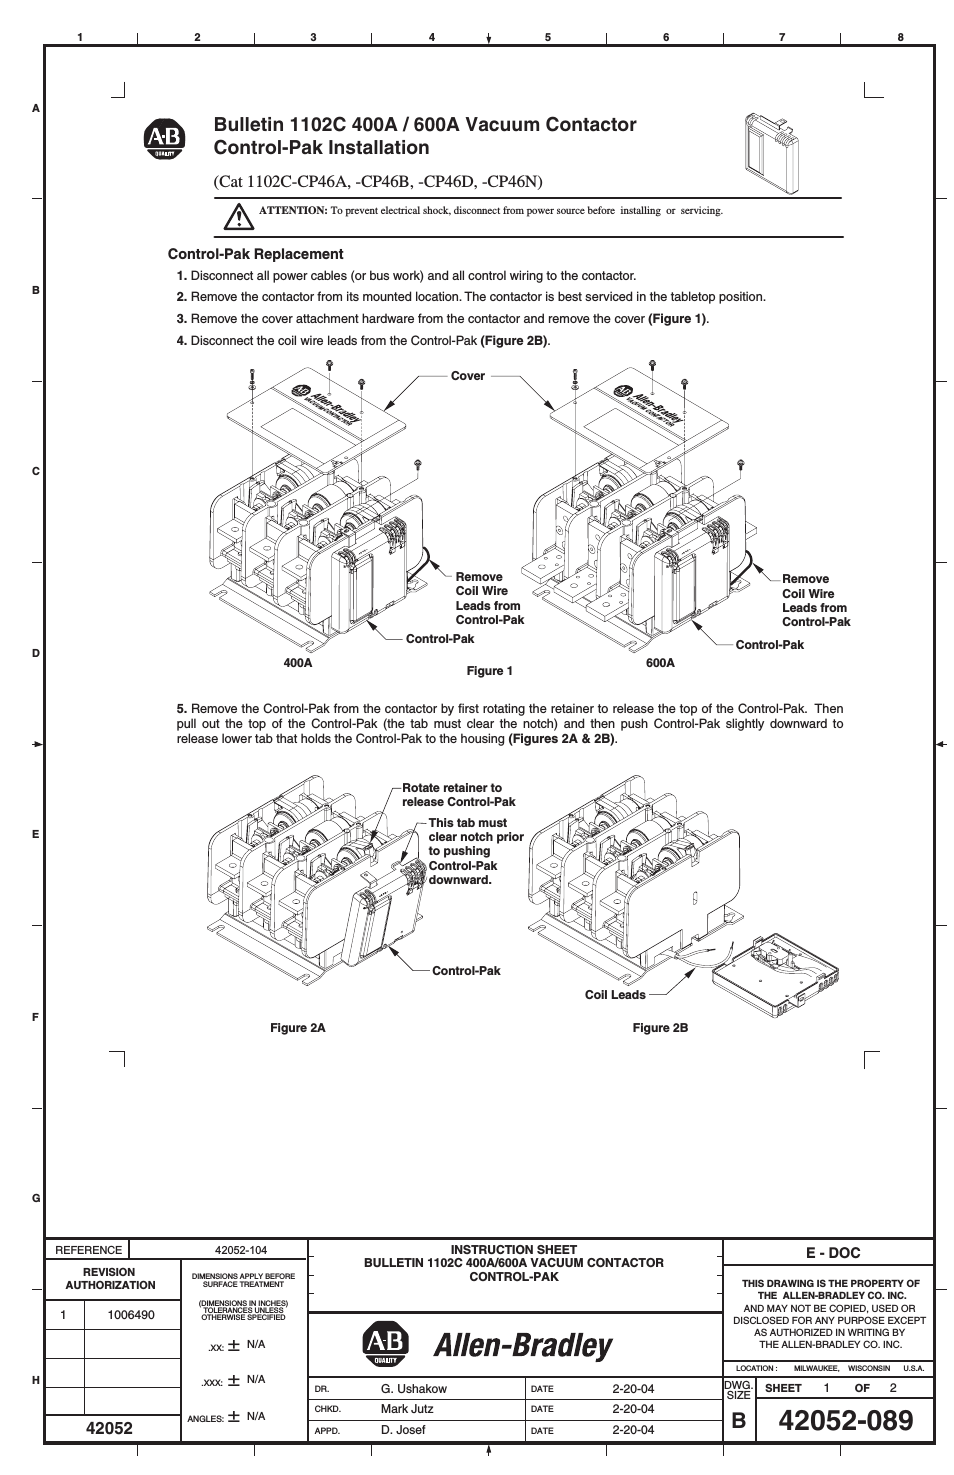 1102C-CP46x 400A / 600A Vacuum Contactor Control-Pak